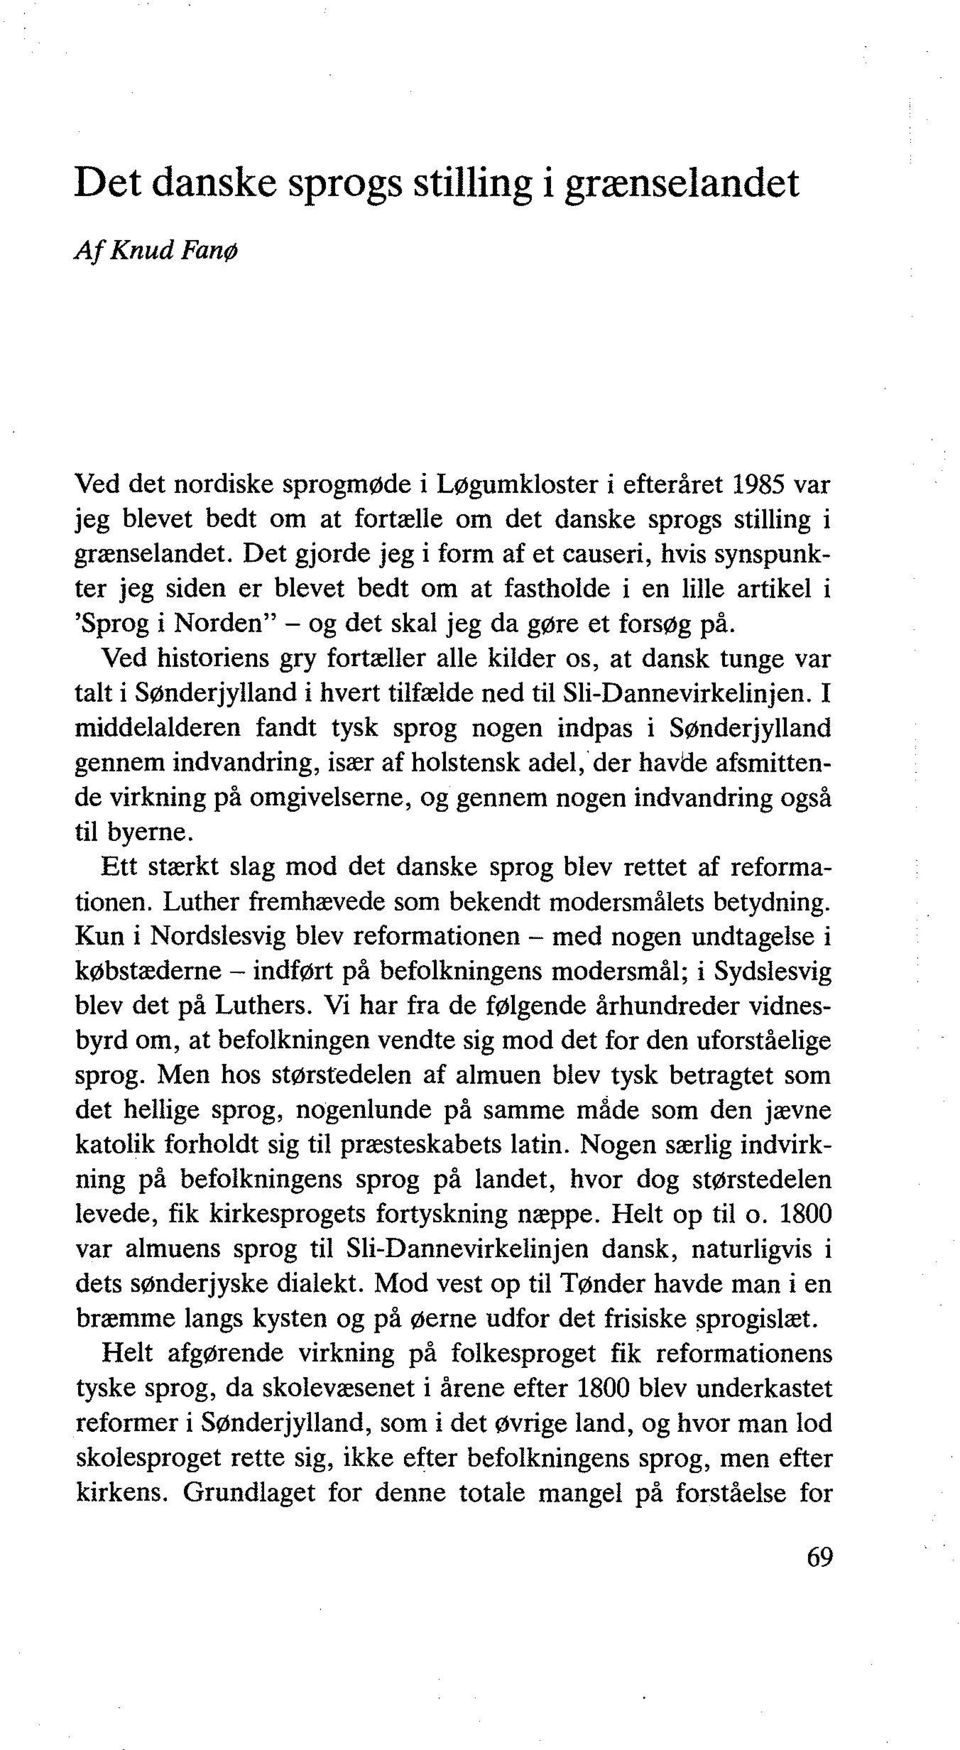 Ved historiens gry fortæller alle kilder os, at dansk tunge var talt i Sønderjylland i hvert tilfælde ned til Sli-Dannevirkelinjen.